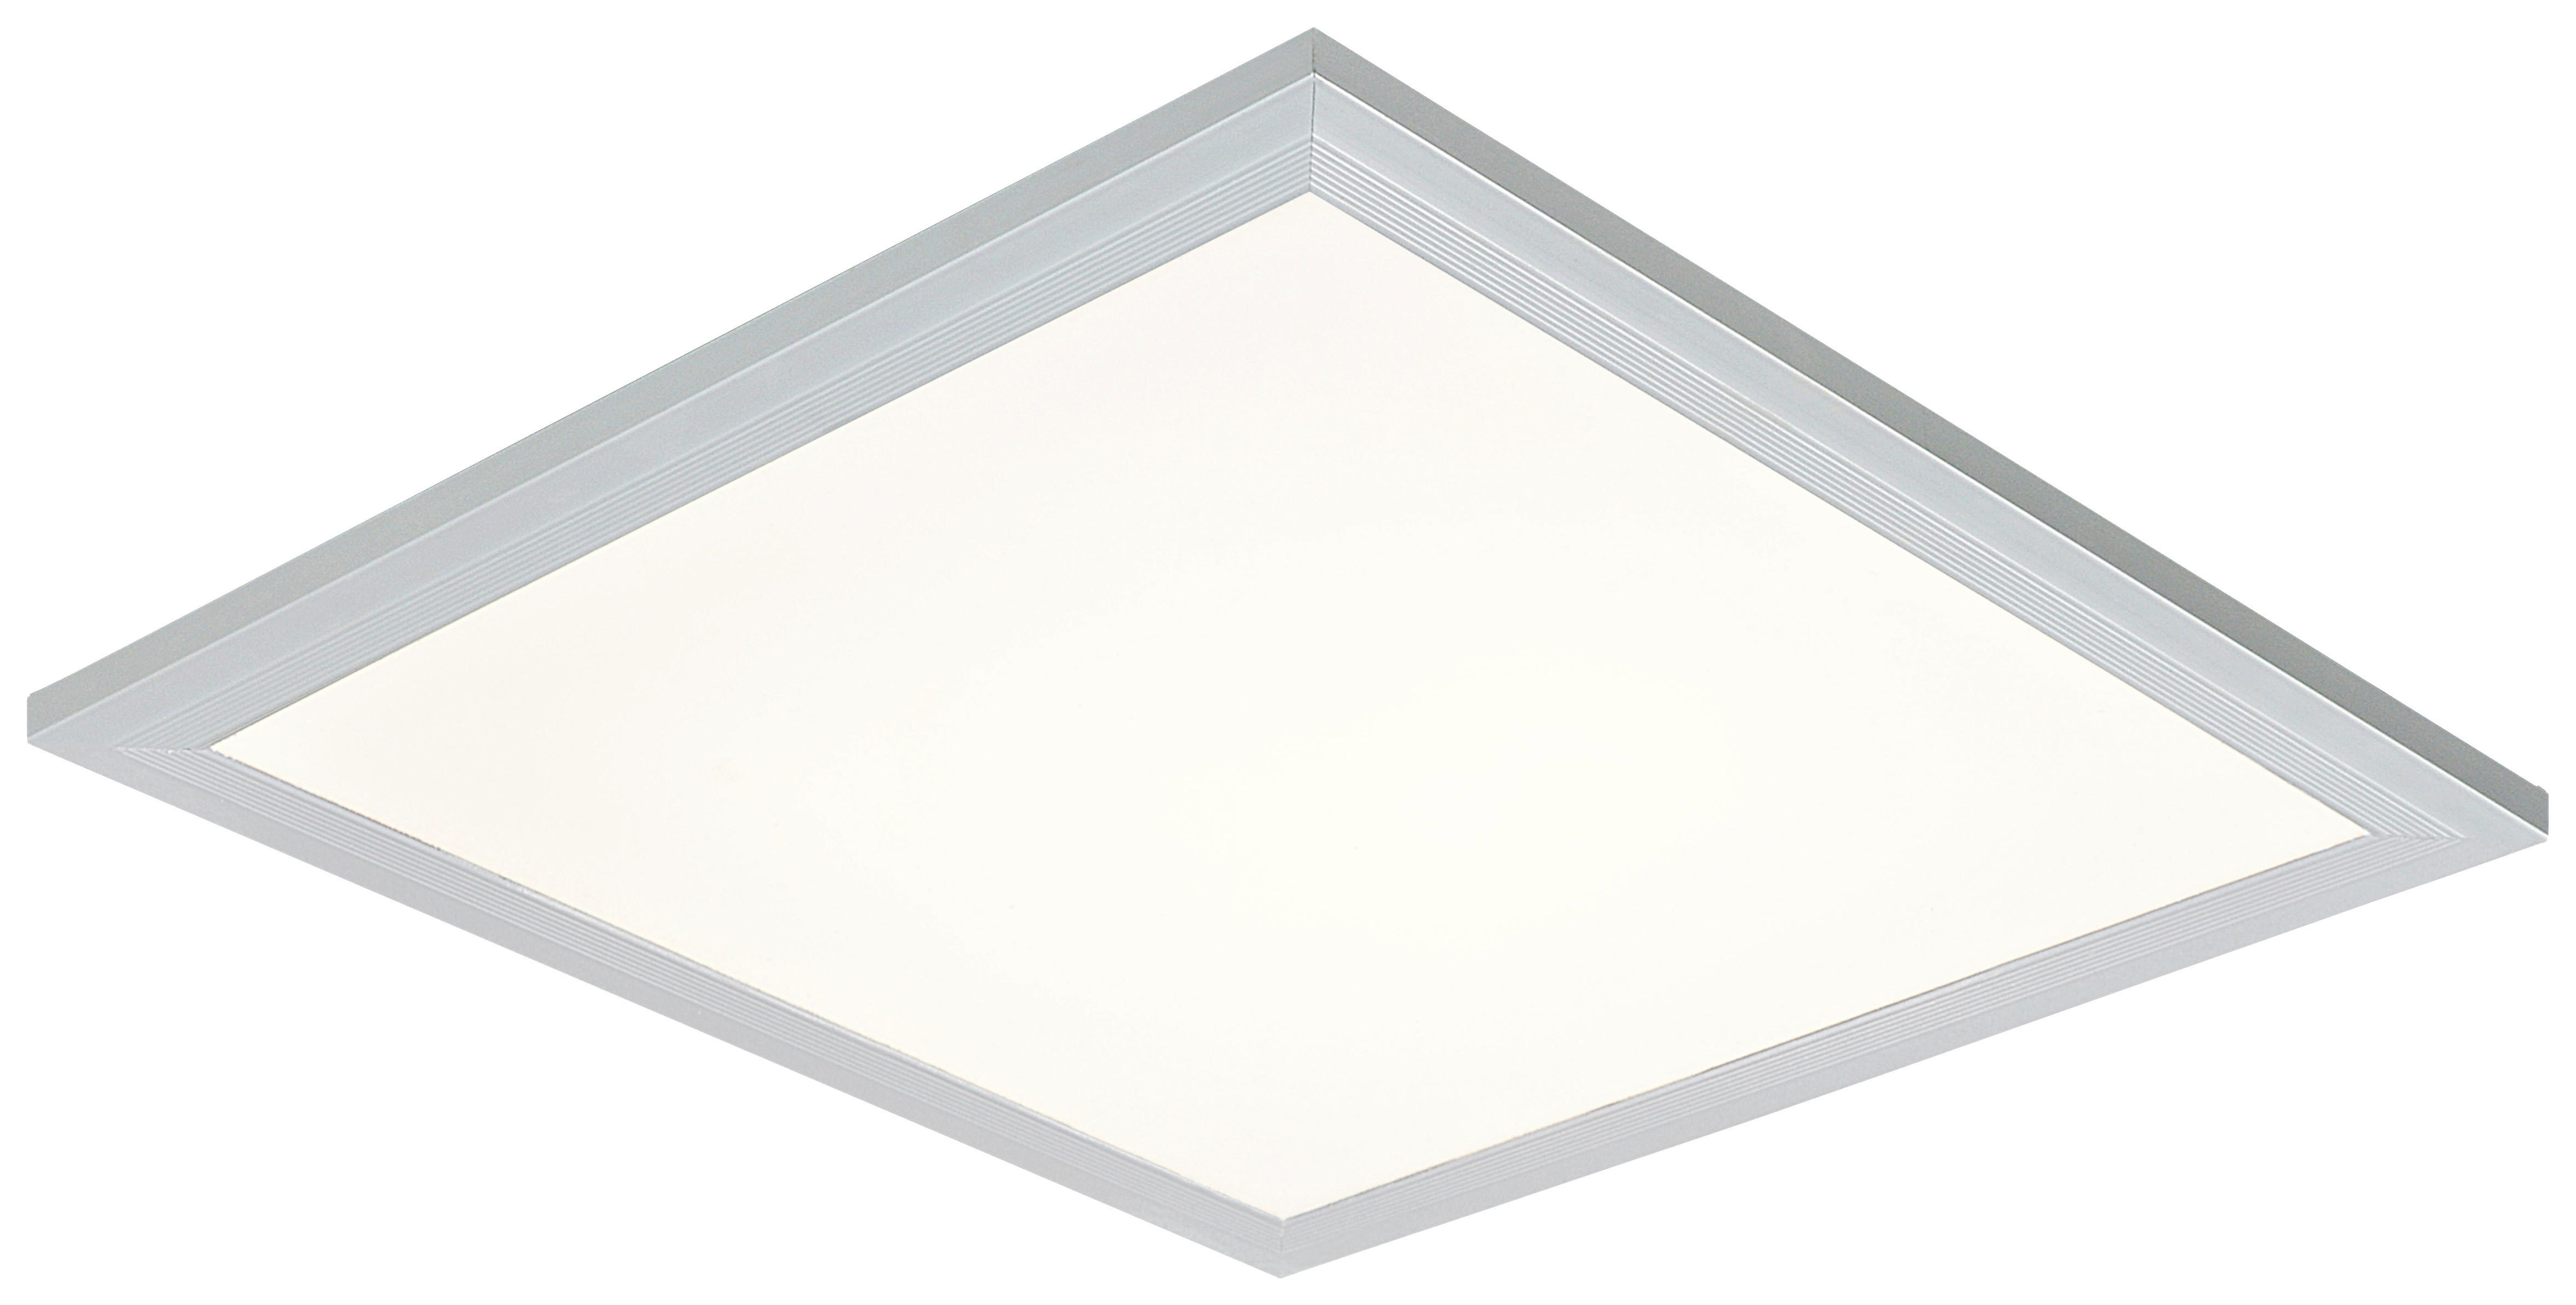 LED-DECKENLEUCHTE 12 W    30/30/6 cm  - Silberfarben/Weiß, Basics, Kunststoff/Metall (30/30/6cm) - Boxxx